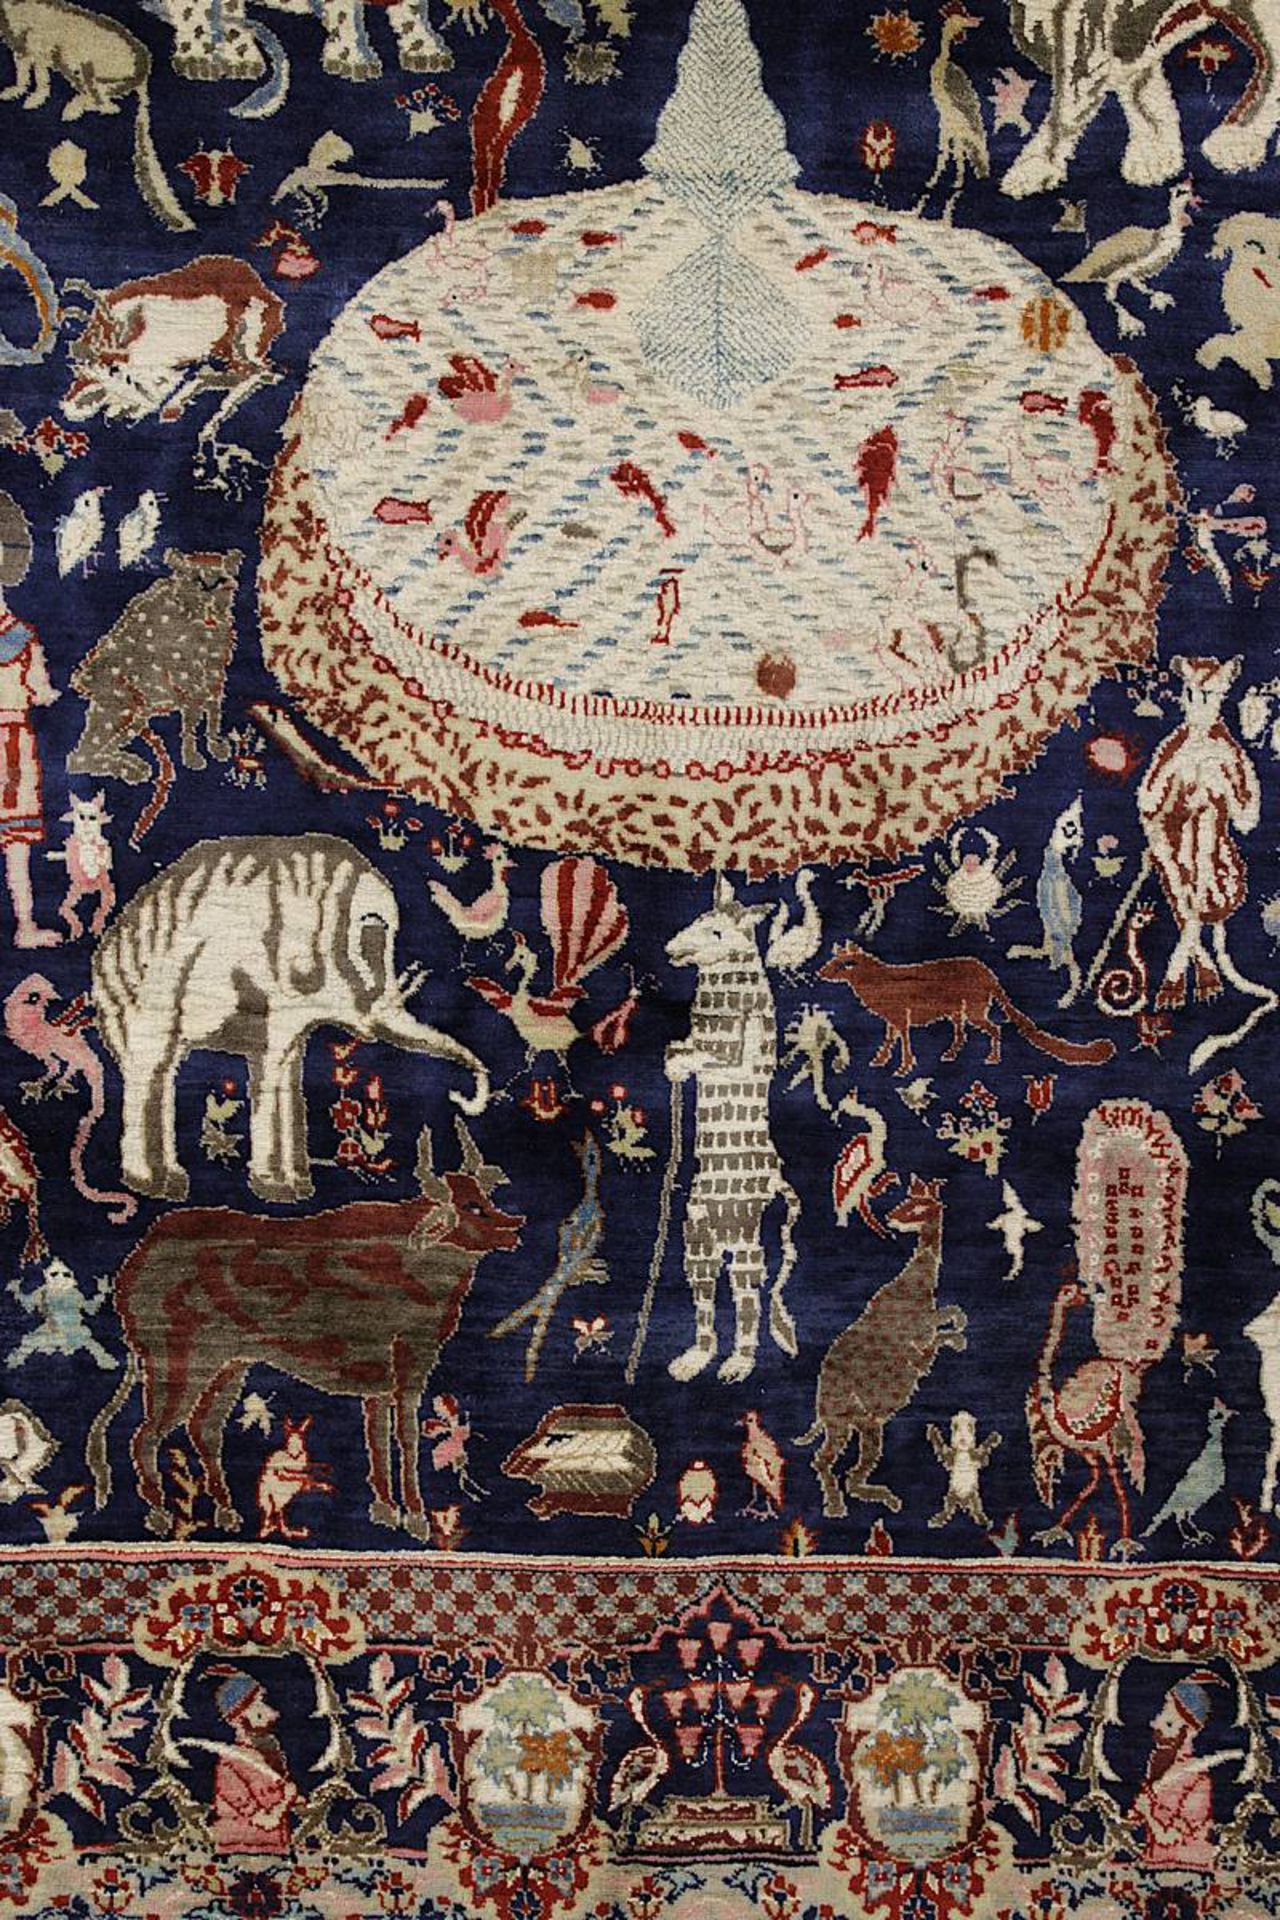 Aufwendiger detailreicher Figurenteppich, Kaschmar, Persien 2. H. 20. Jh., mit Paradiesmotiven u. - Image 9 of 14